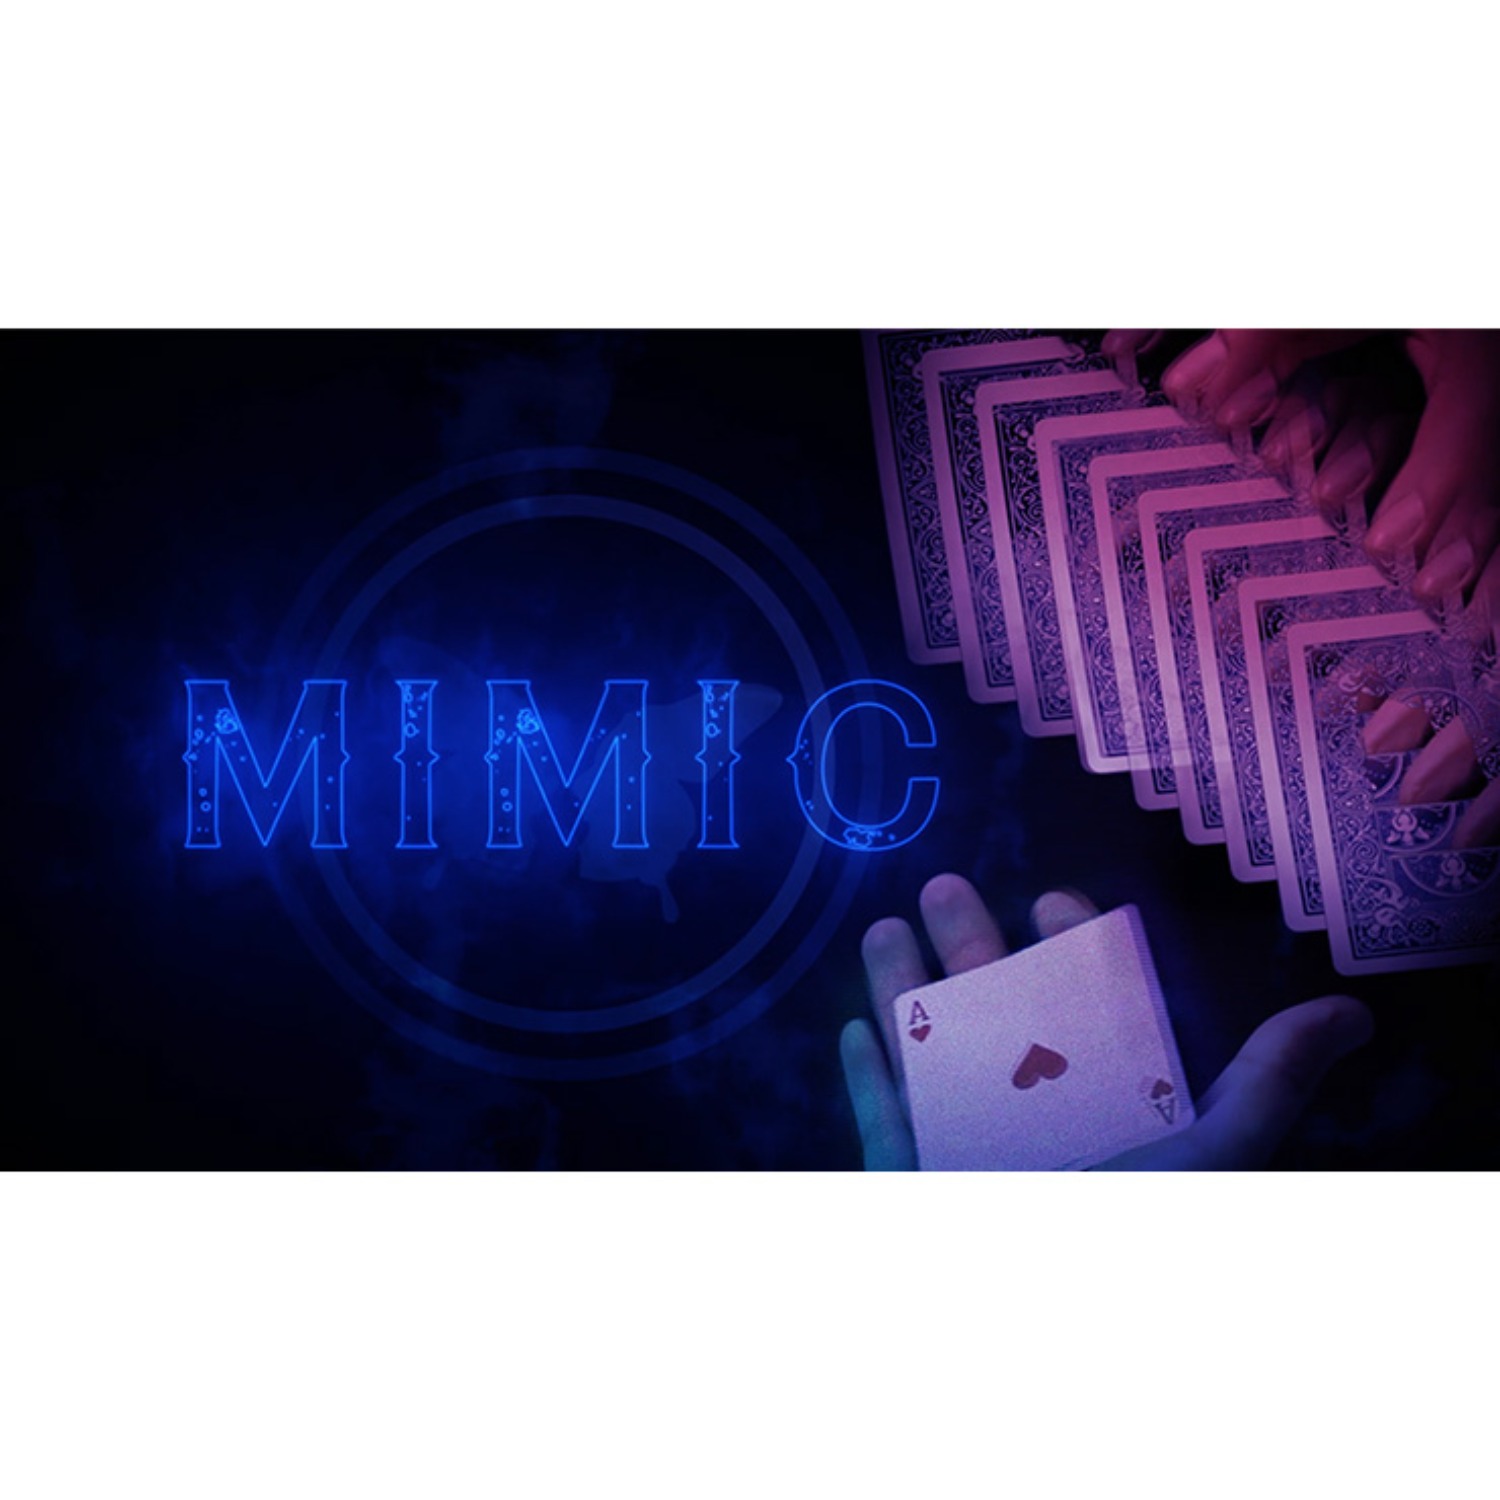 [미믹]Mimic DVD and Gimmick by SansMinds Creative Lab 찢어진 카드가 관객의 손위에서 온전한 카드로 순식간에 바뀝니다.